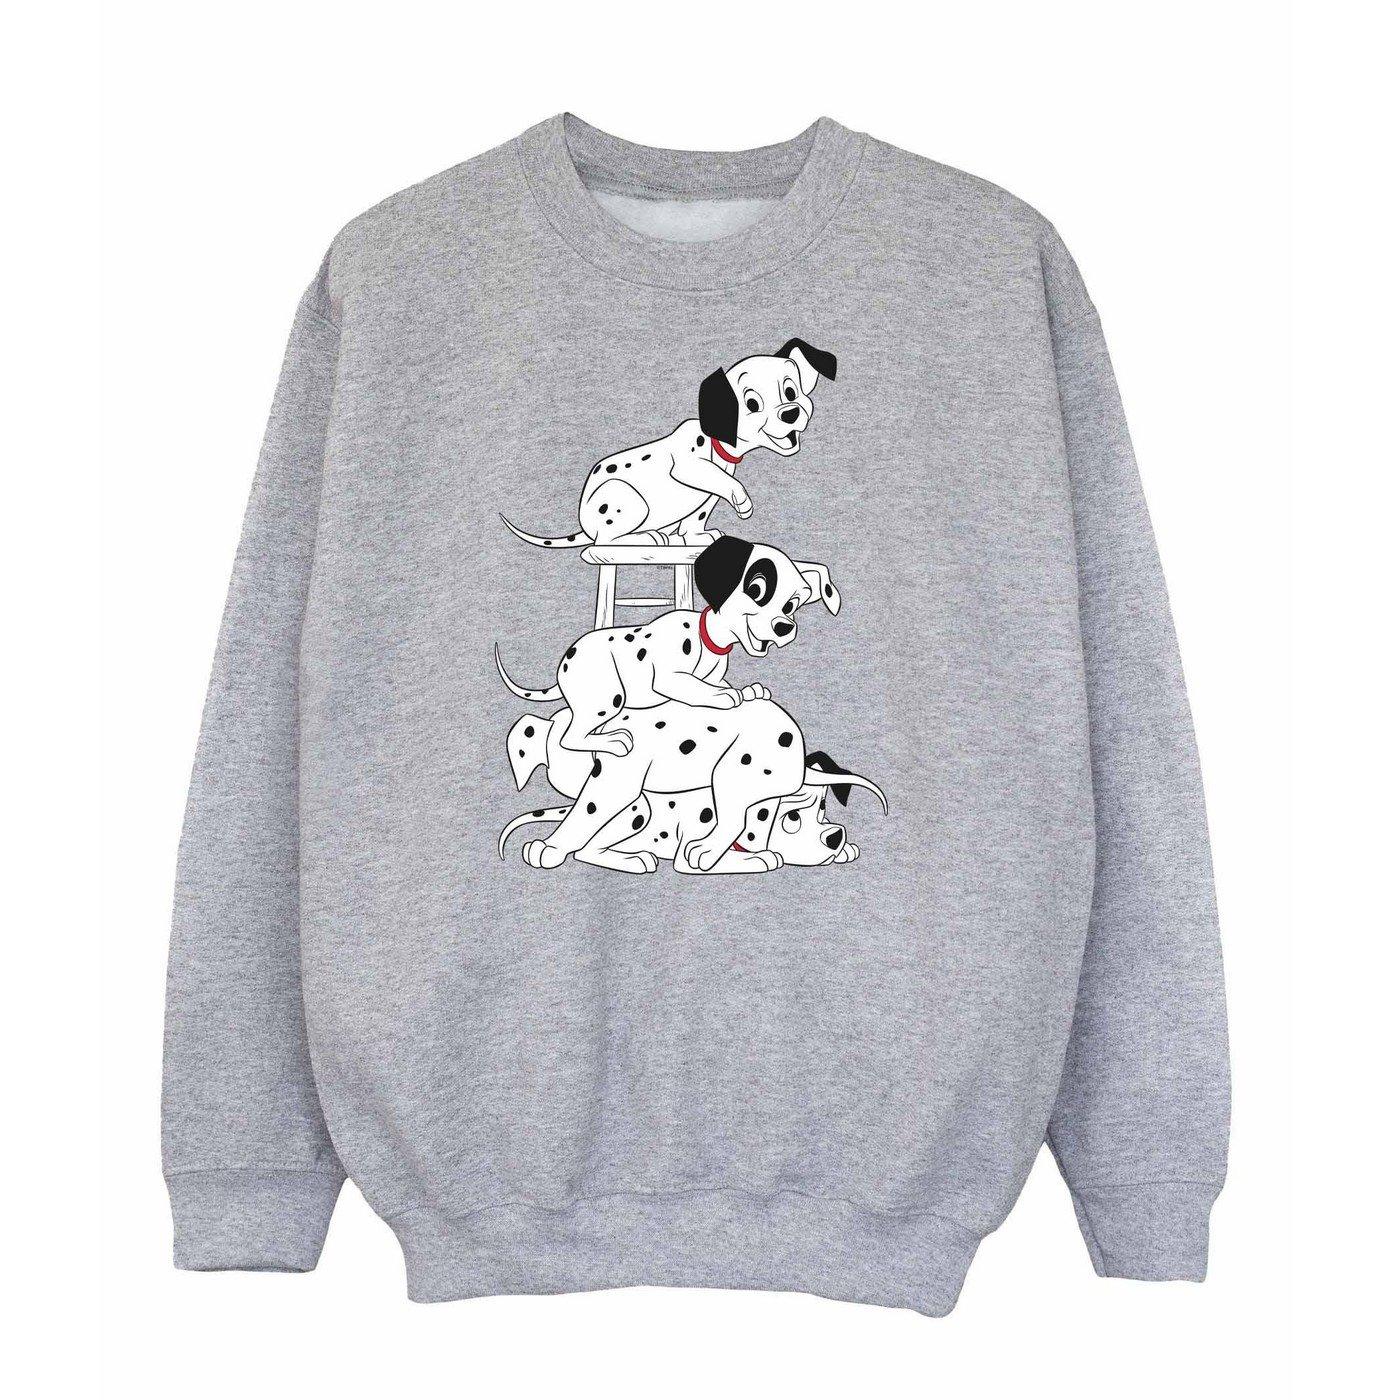 Sweatshirt Jungen Grau 116 von 101 Dalmatians